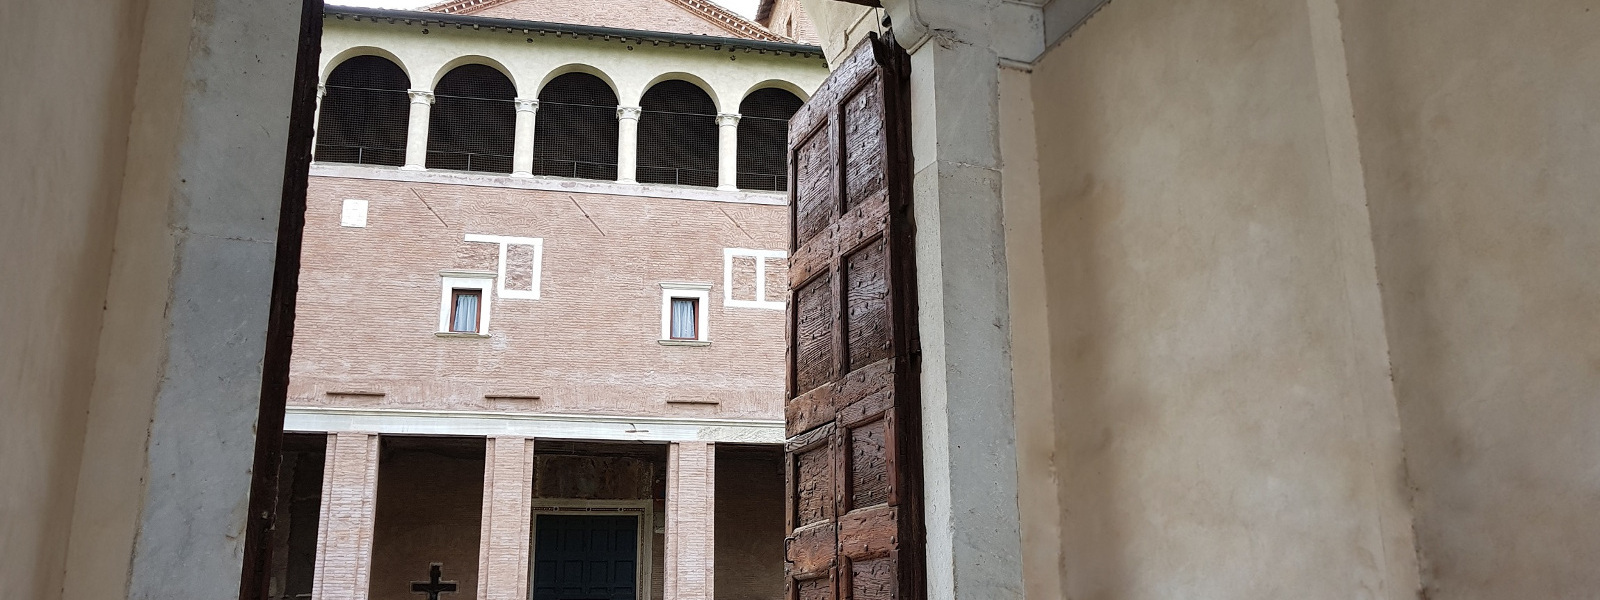 Portale d'ingresso al cortile della Basilica di san Saba sull'Aventino minore, Roma